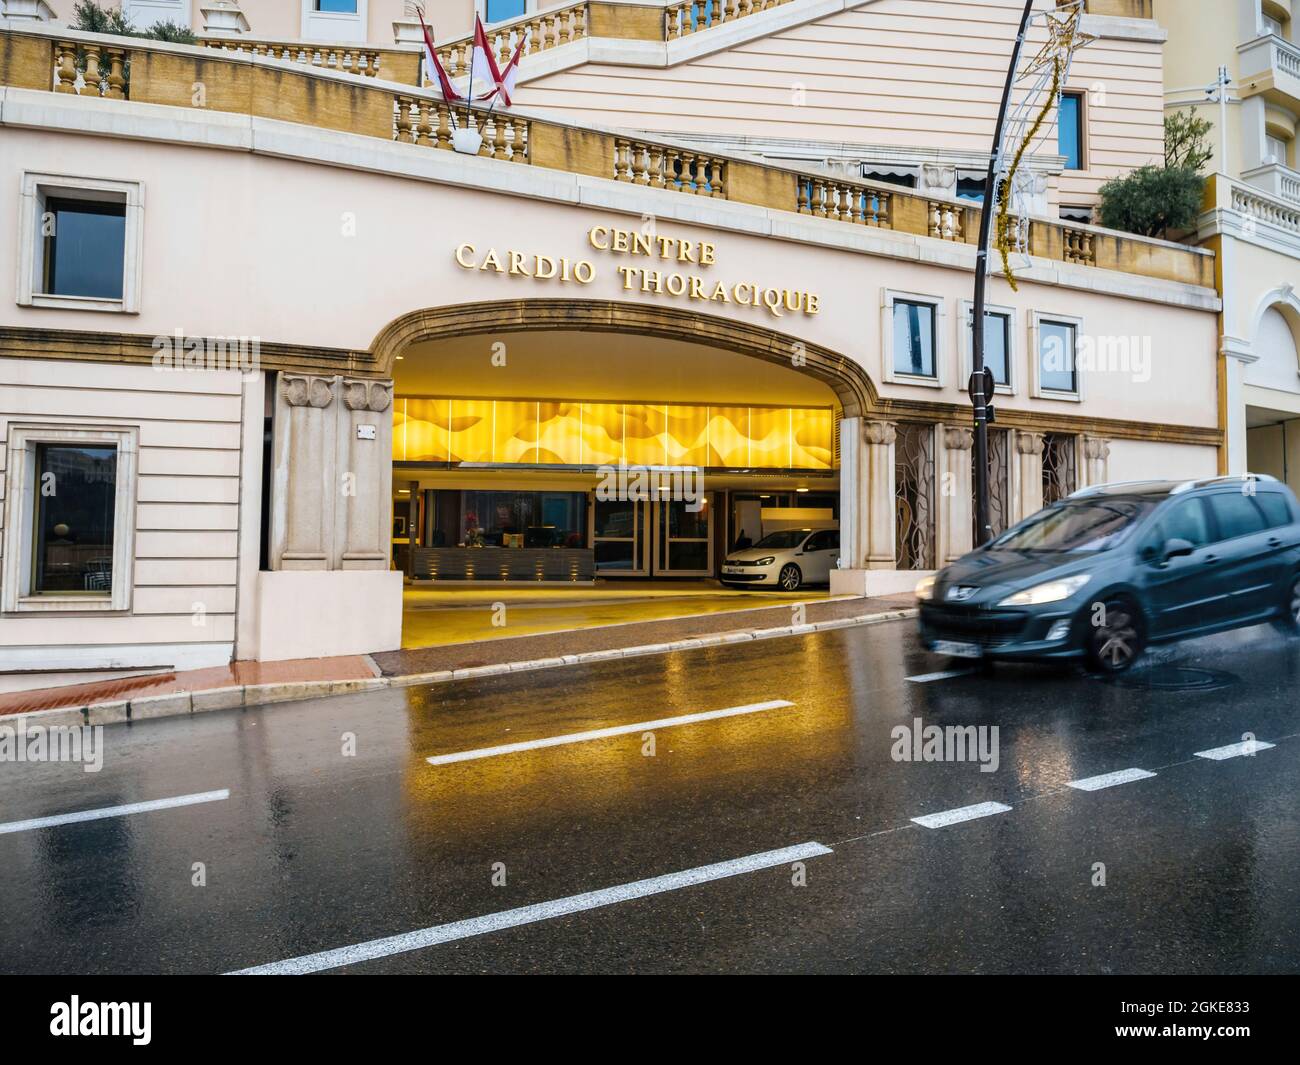 Entrée principale du Centre cardiovasculaire et thoracique de Monaco Banque D'Images